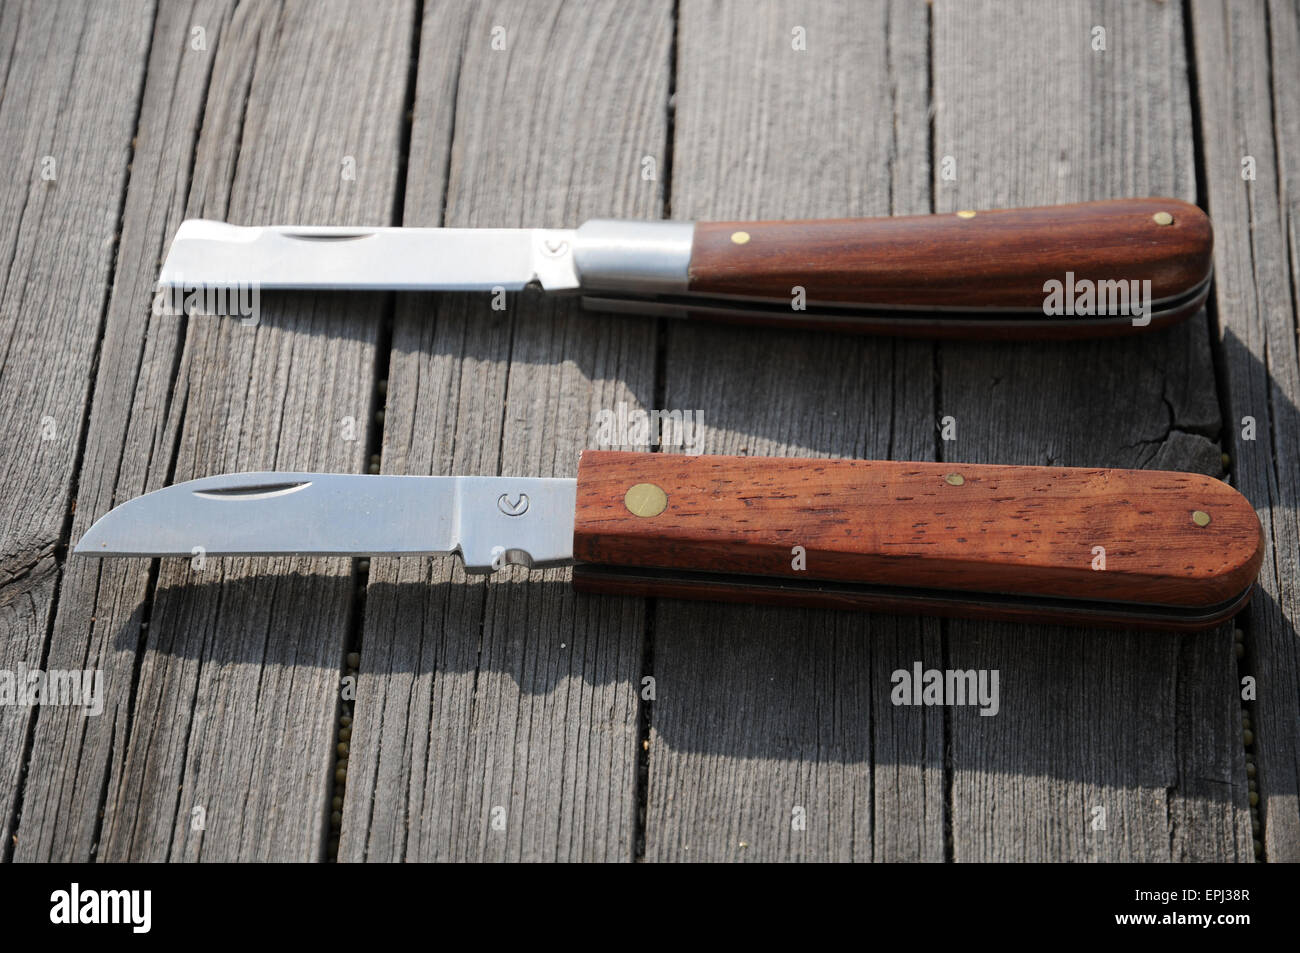 Grafting knives Stock Photo